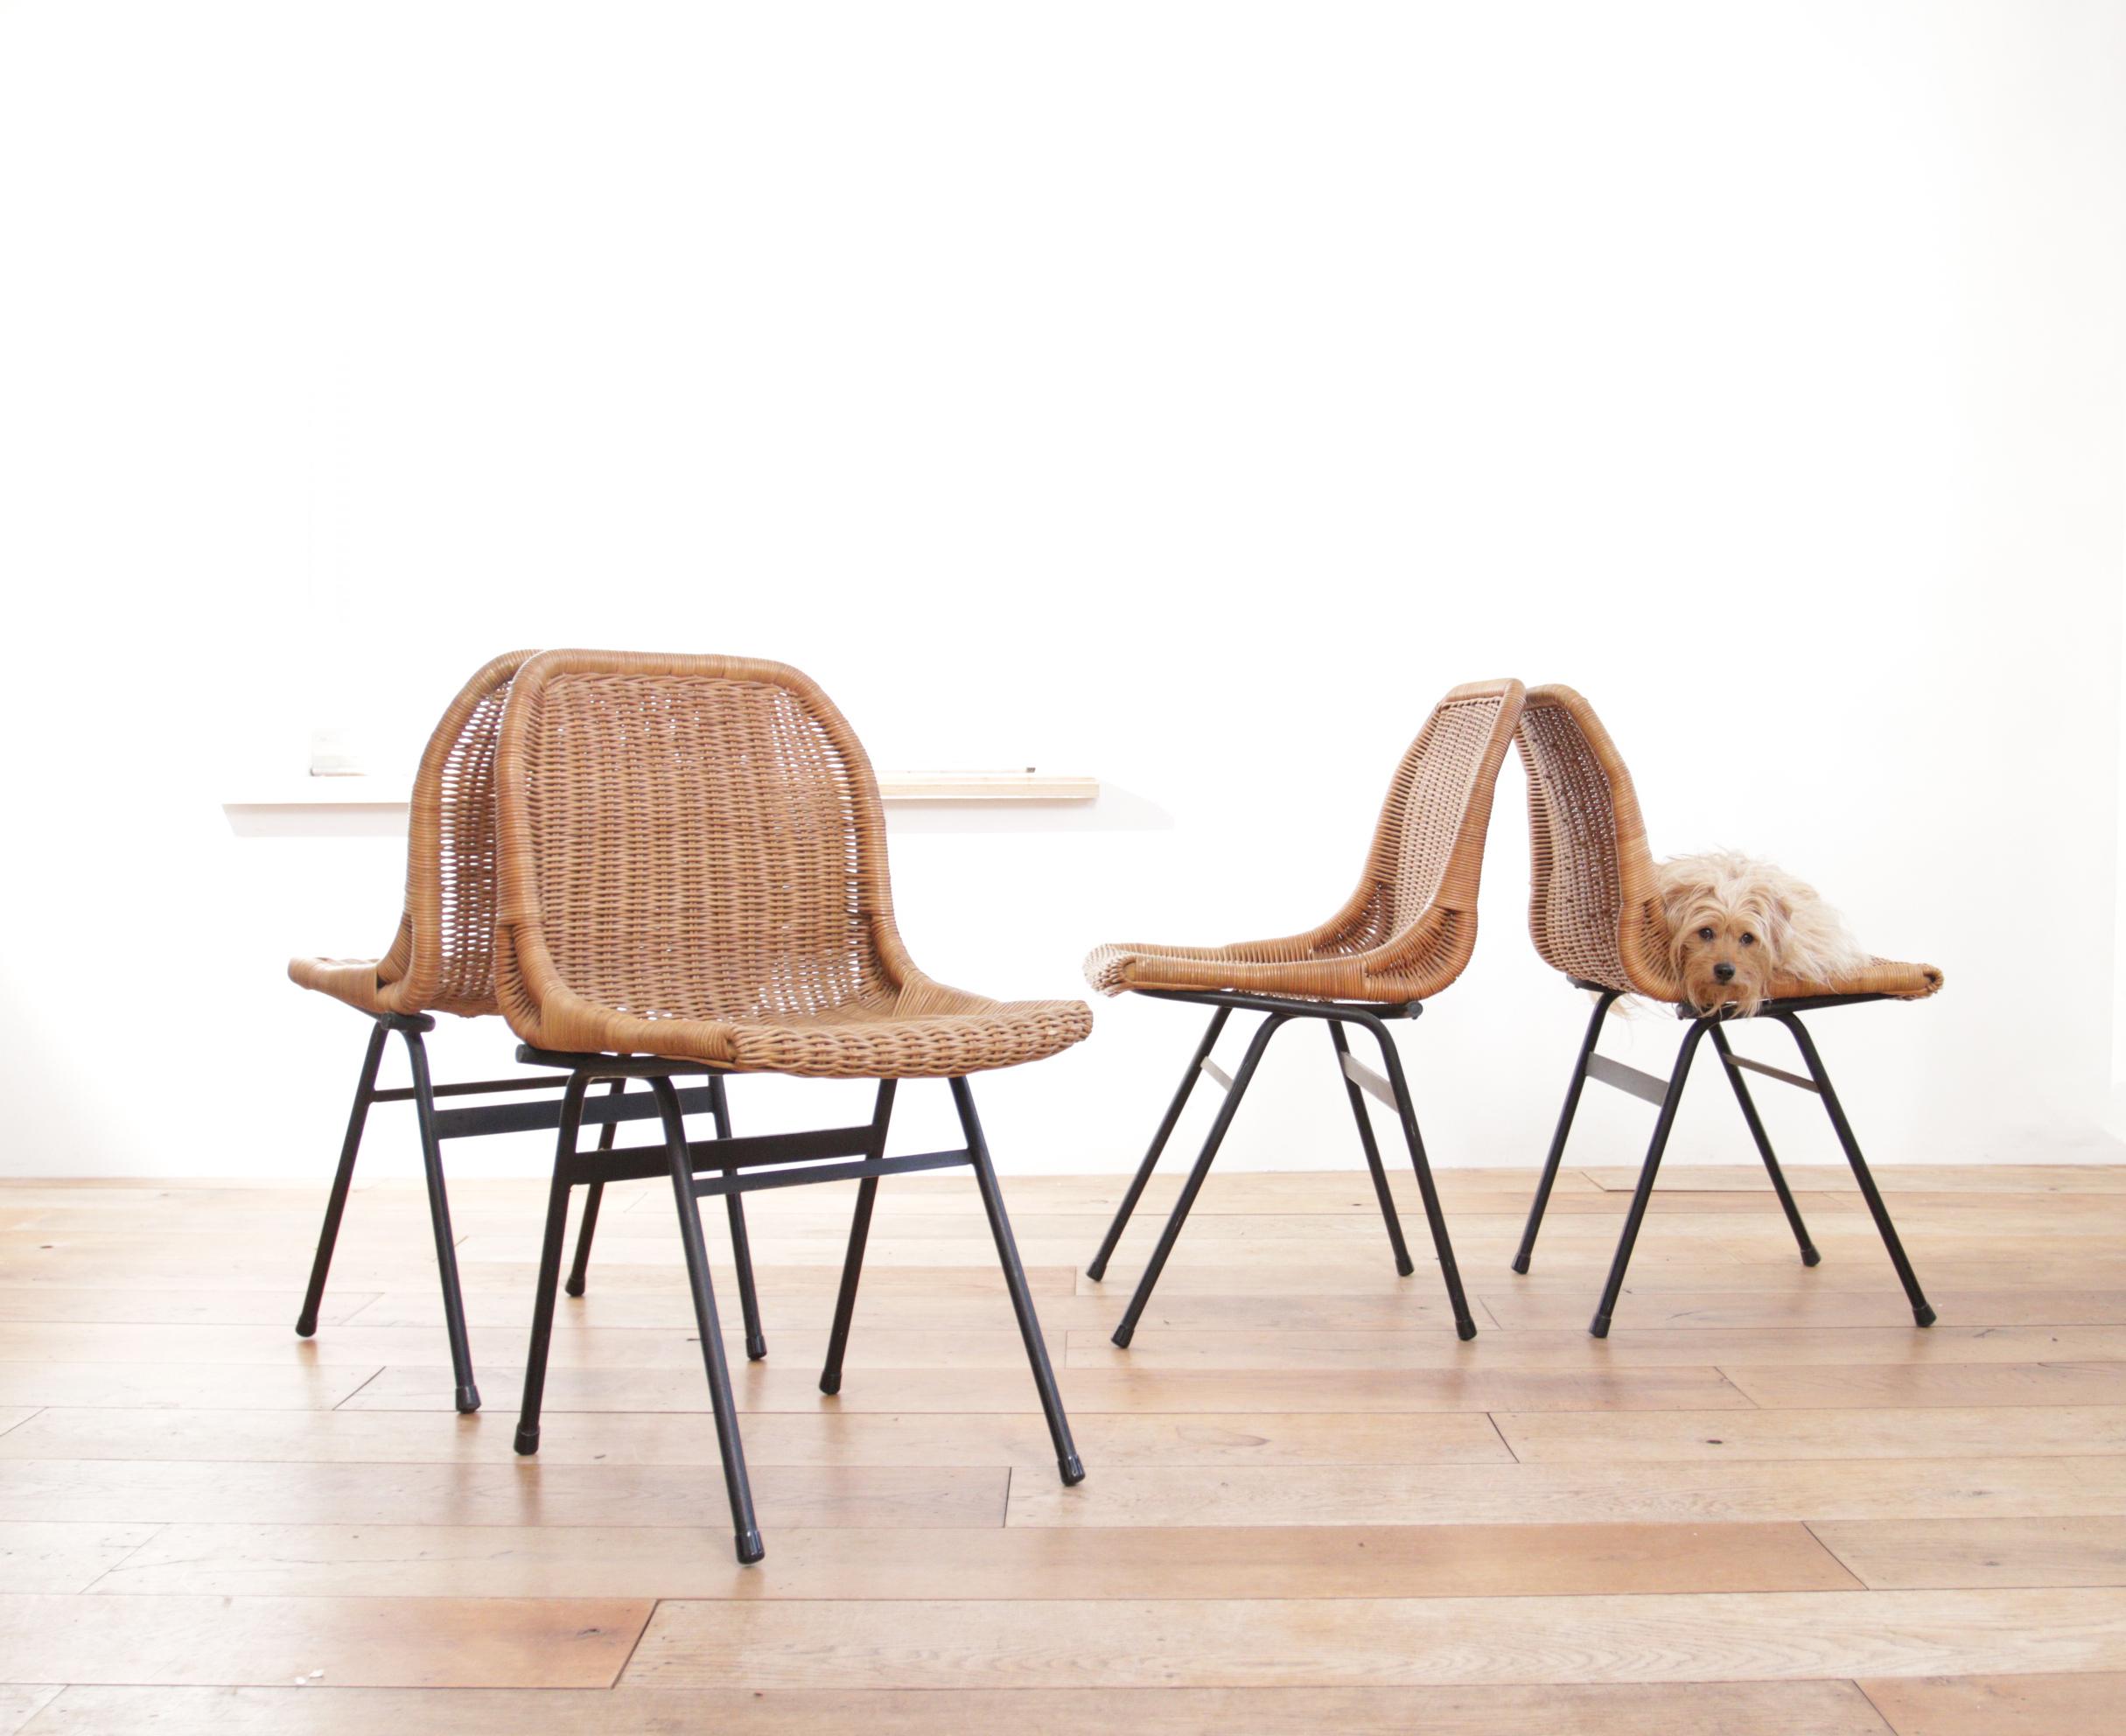 4 schöne Stühle mit Rattansitz und schwarz beschichtetem Metallgestell.

(1920-2010) Dirk van Sliedregt, bedeutender Möbeldesigner, Innenarchitekt, Lehrer.

Passt perfekt zu den Entwürfen von u.a.: Charlotte Perriand, Le Corbusier

Schlüsselwörter: